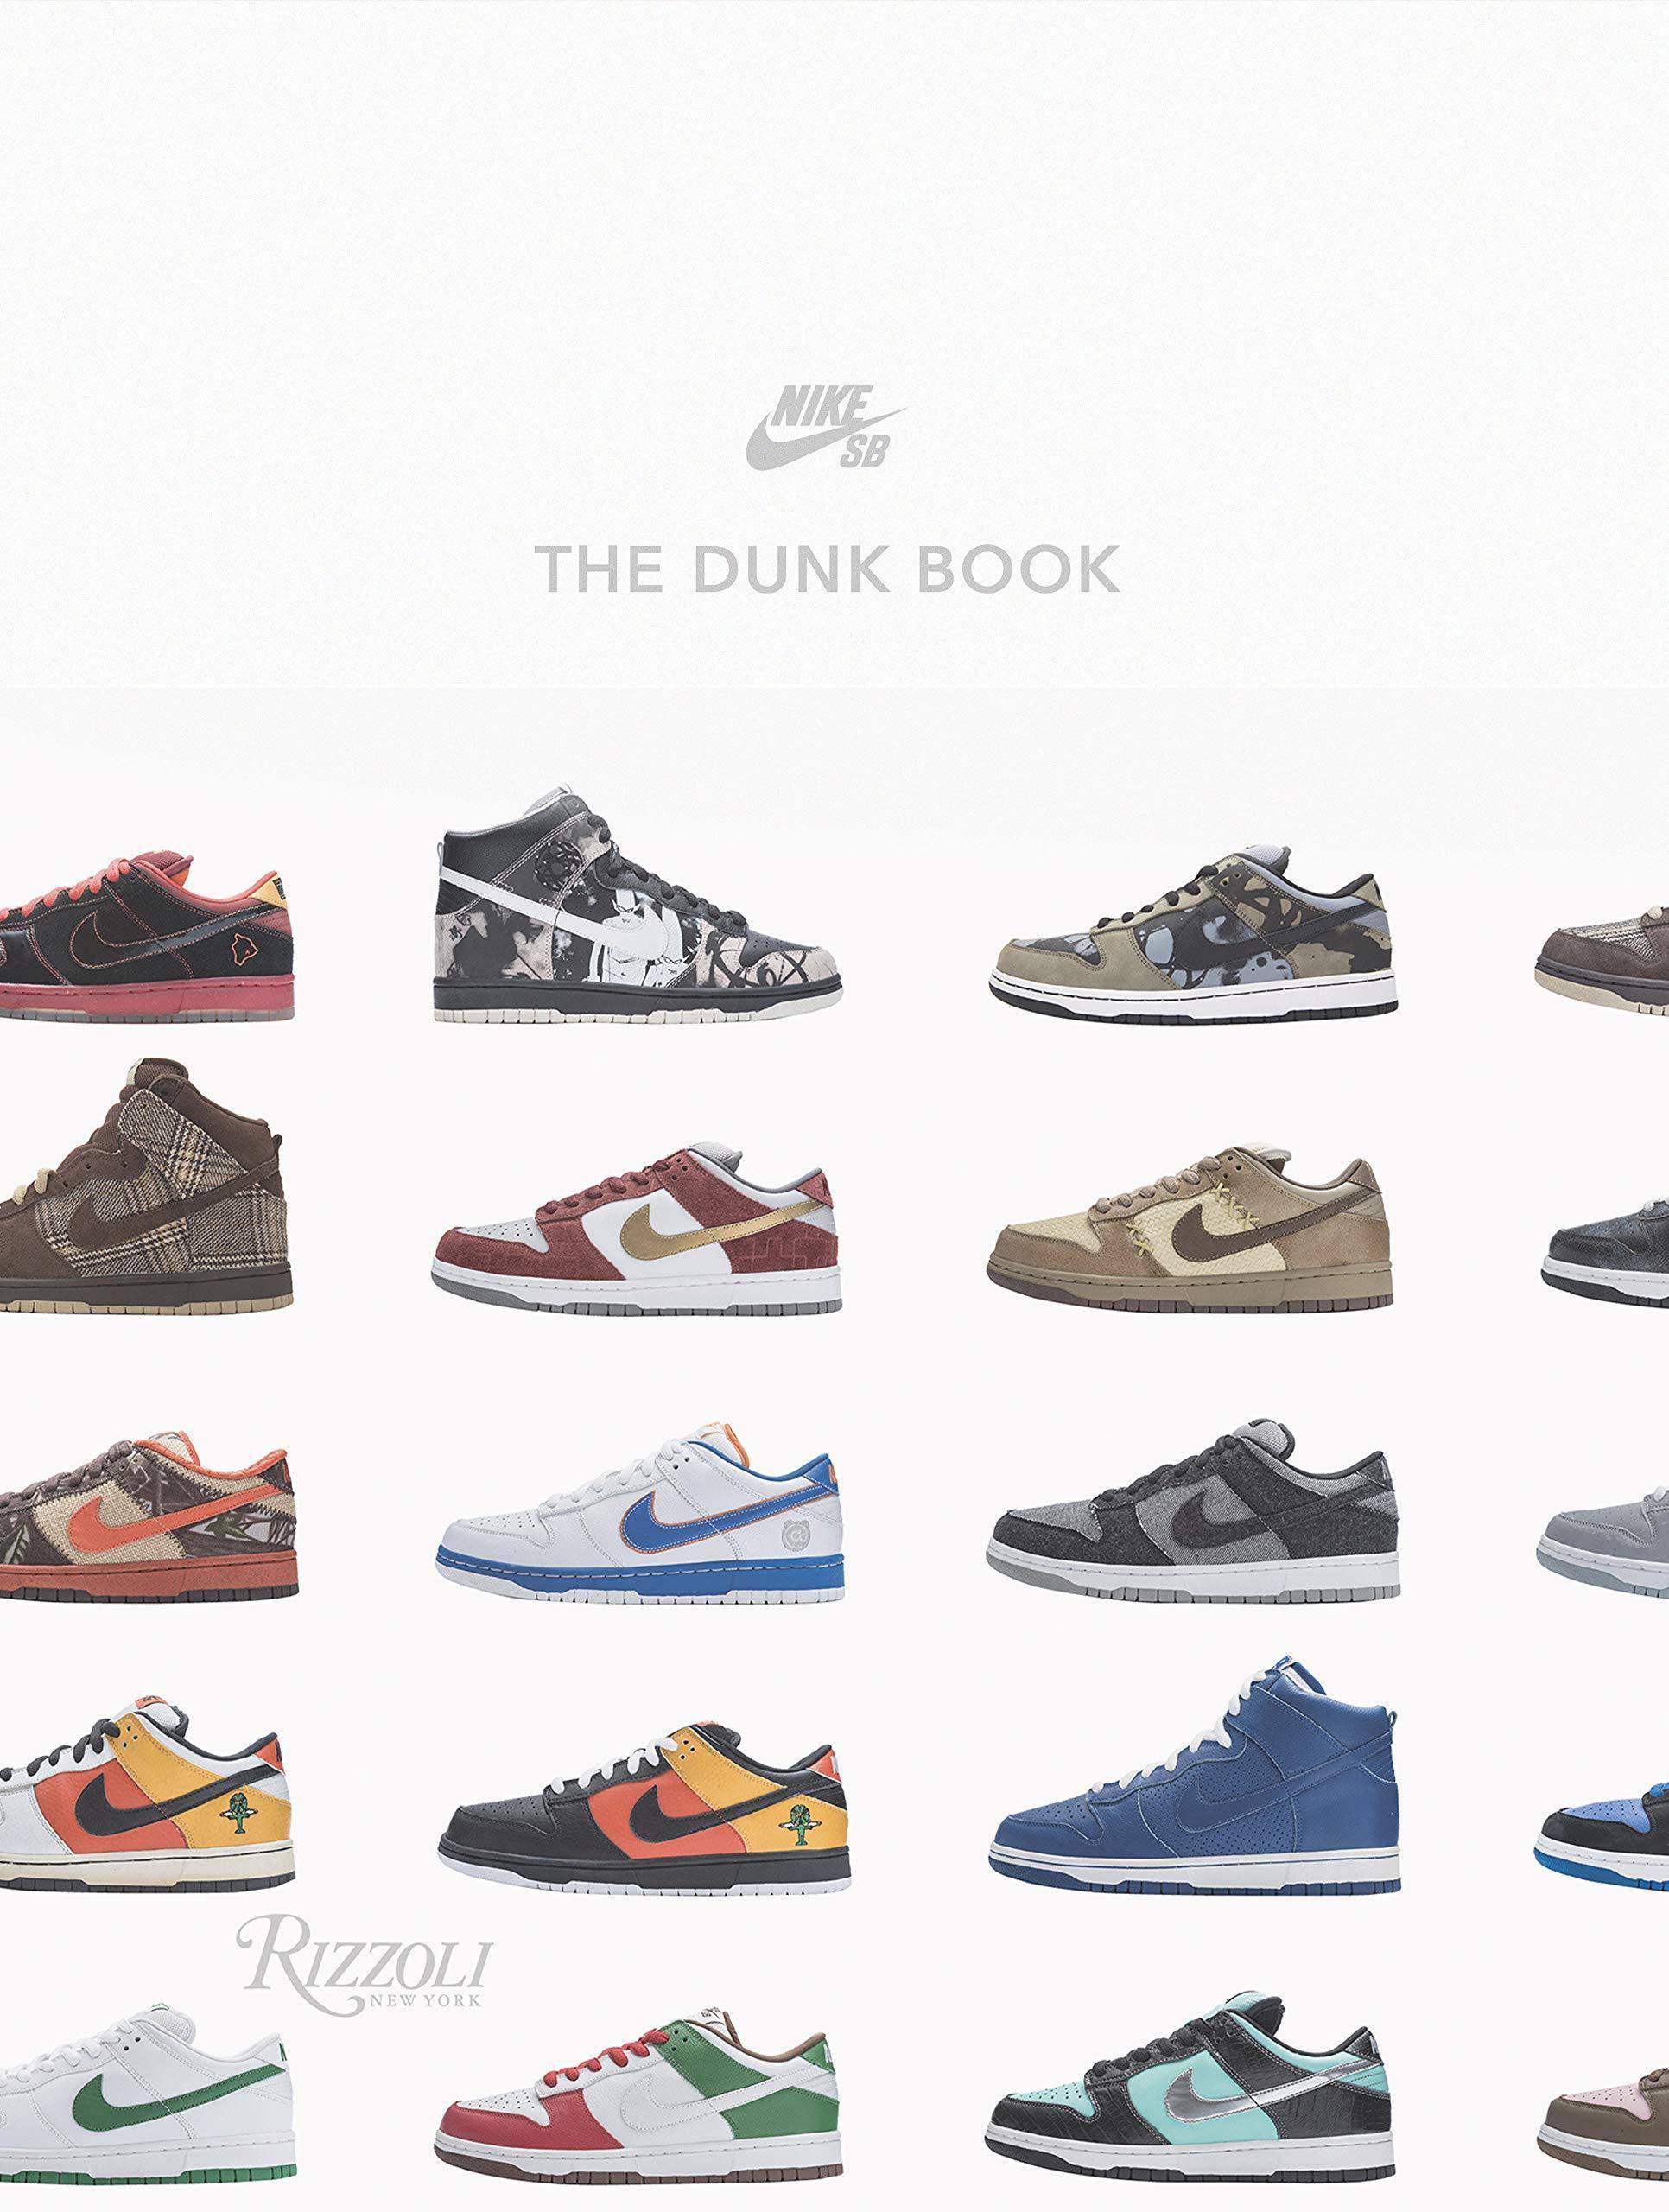 Nike Sb: The Dunk Book - SureShot Books Publishing LLC